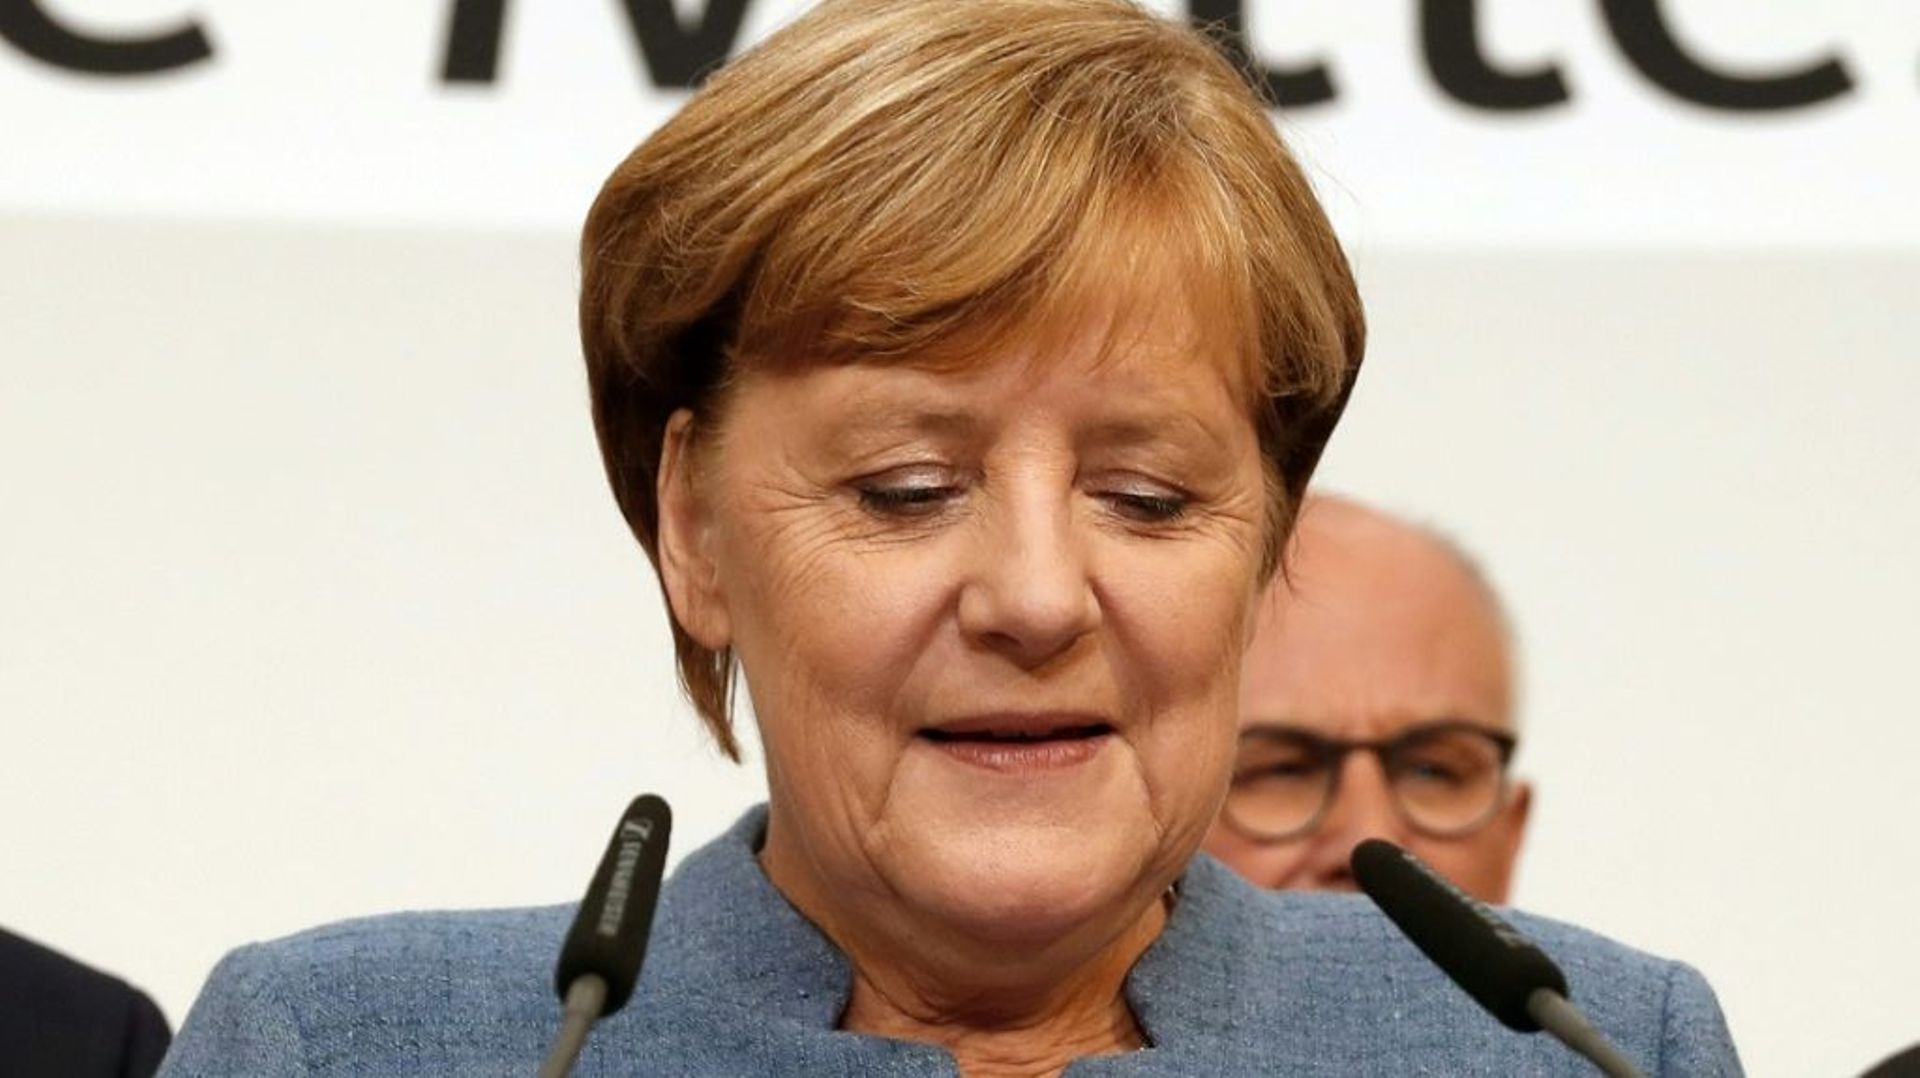 La chancelière allemande Angela Merkel à Berlin, le 24 septembre 2017